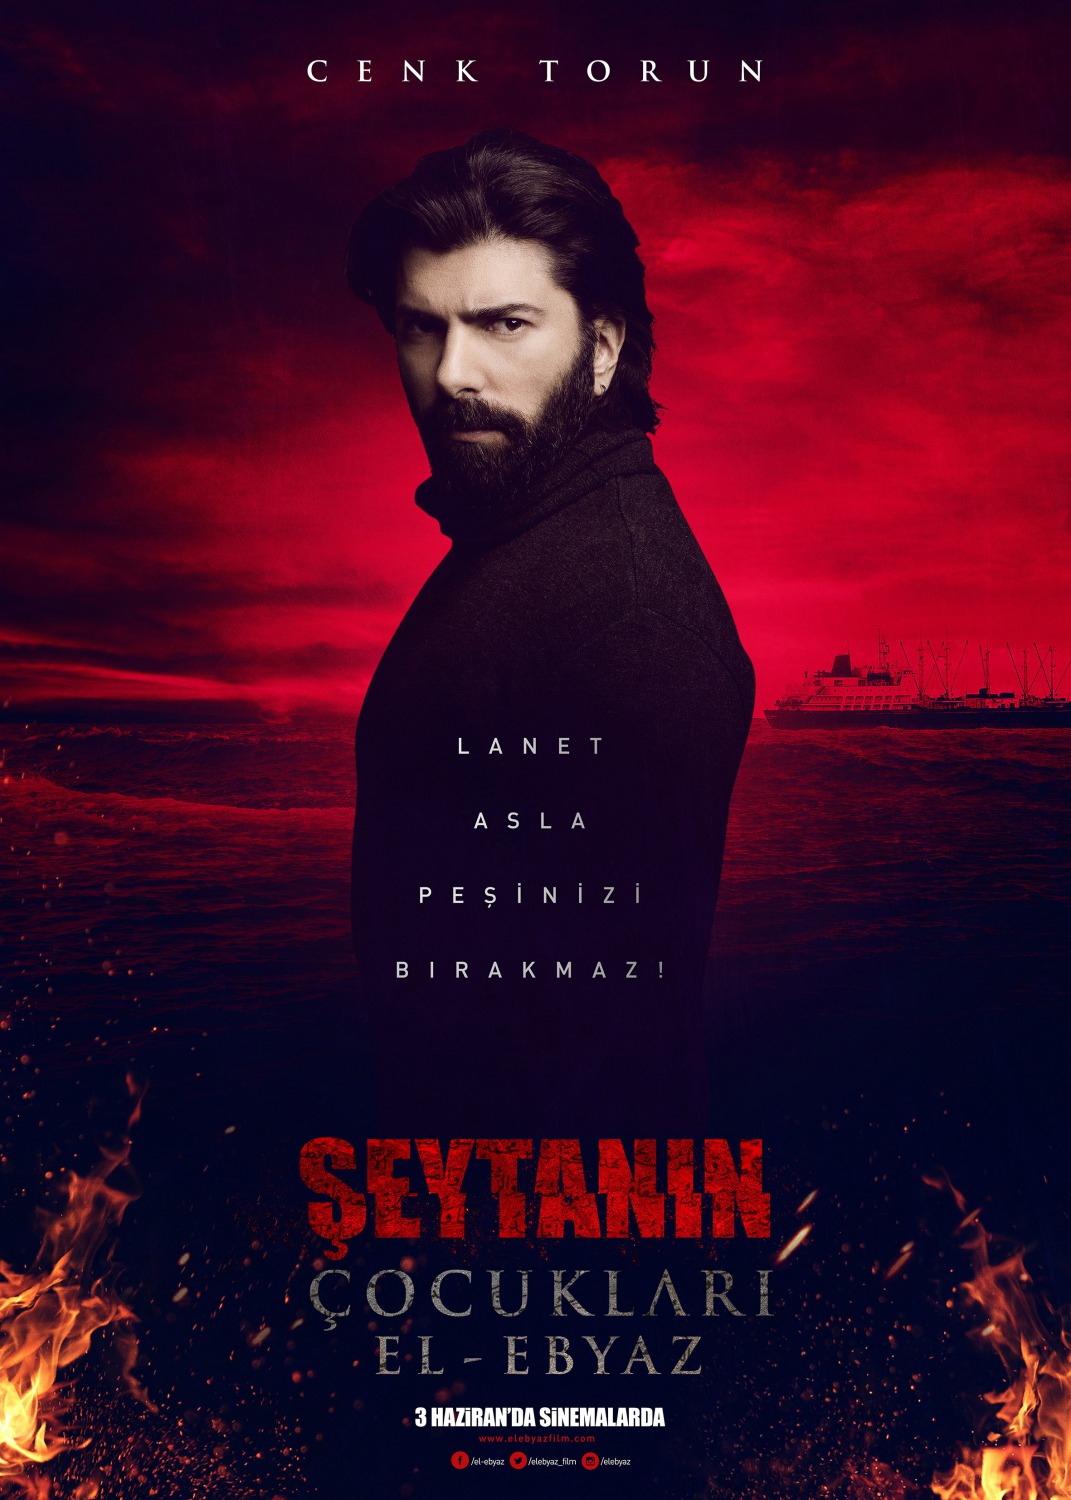 Extra Large Movie Poster Image for Şeytanın Çocukları-El Ebyaz (#5 of 7)